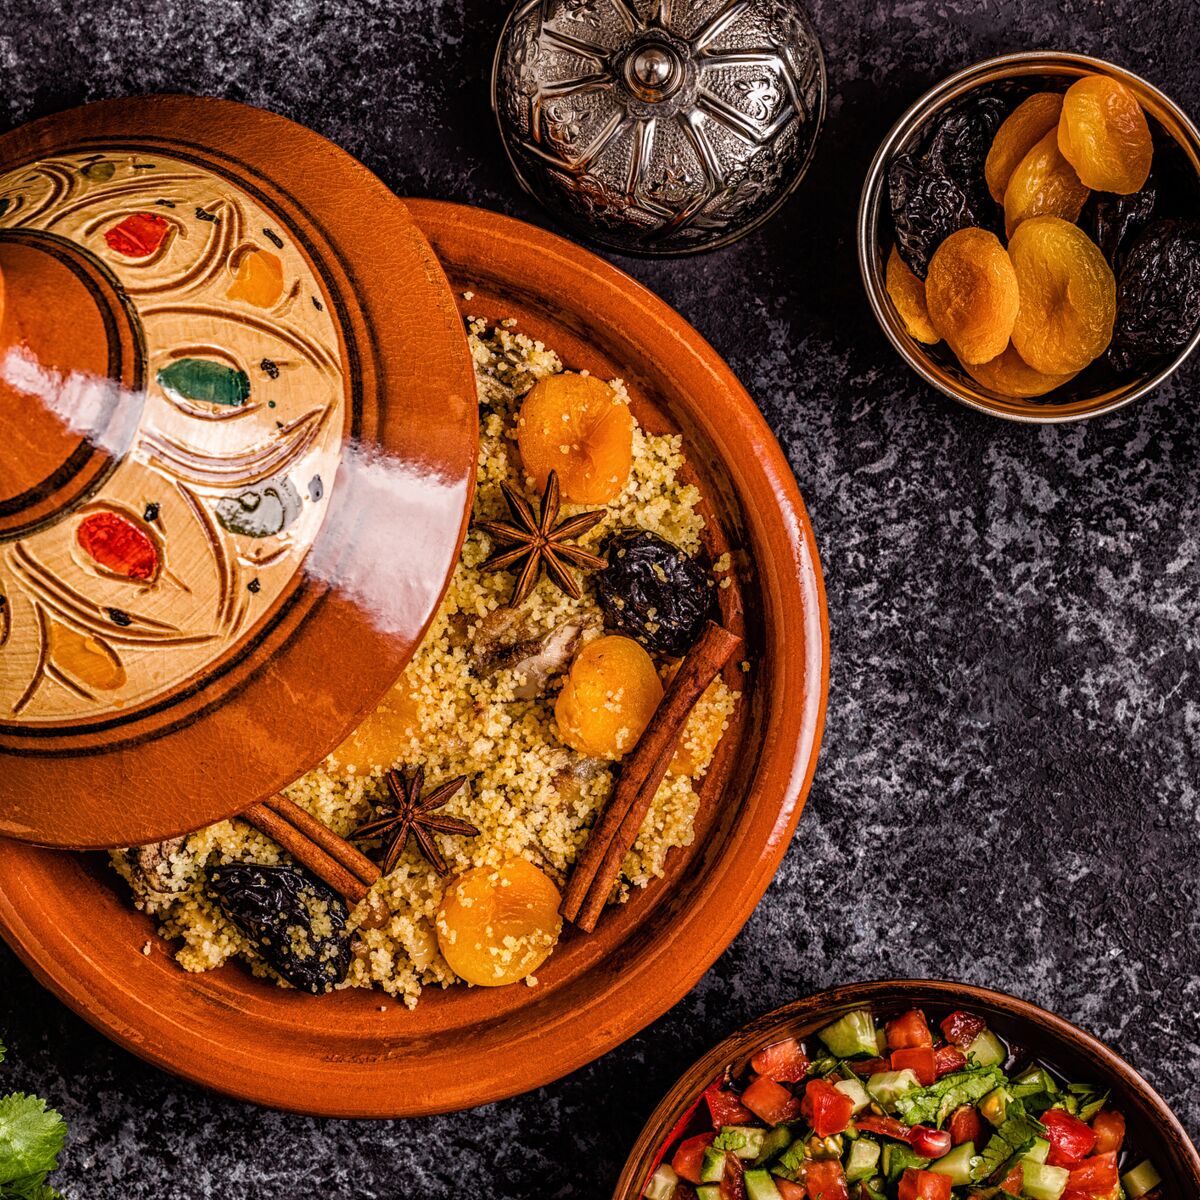 Le vrai couscous royal marocain facile : découvrez les recettes de Cuisine  Actuelle